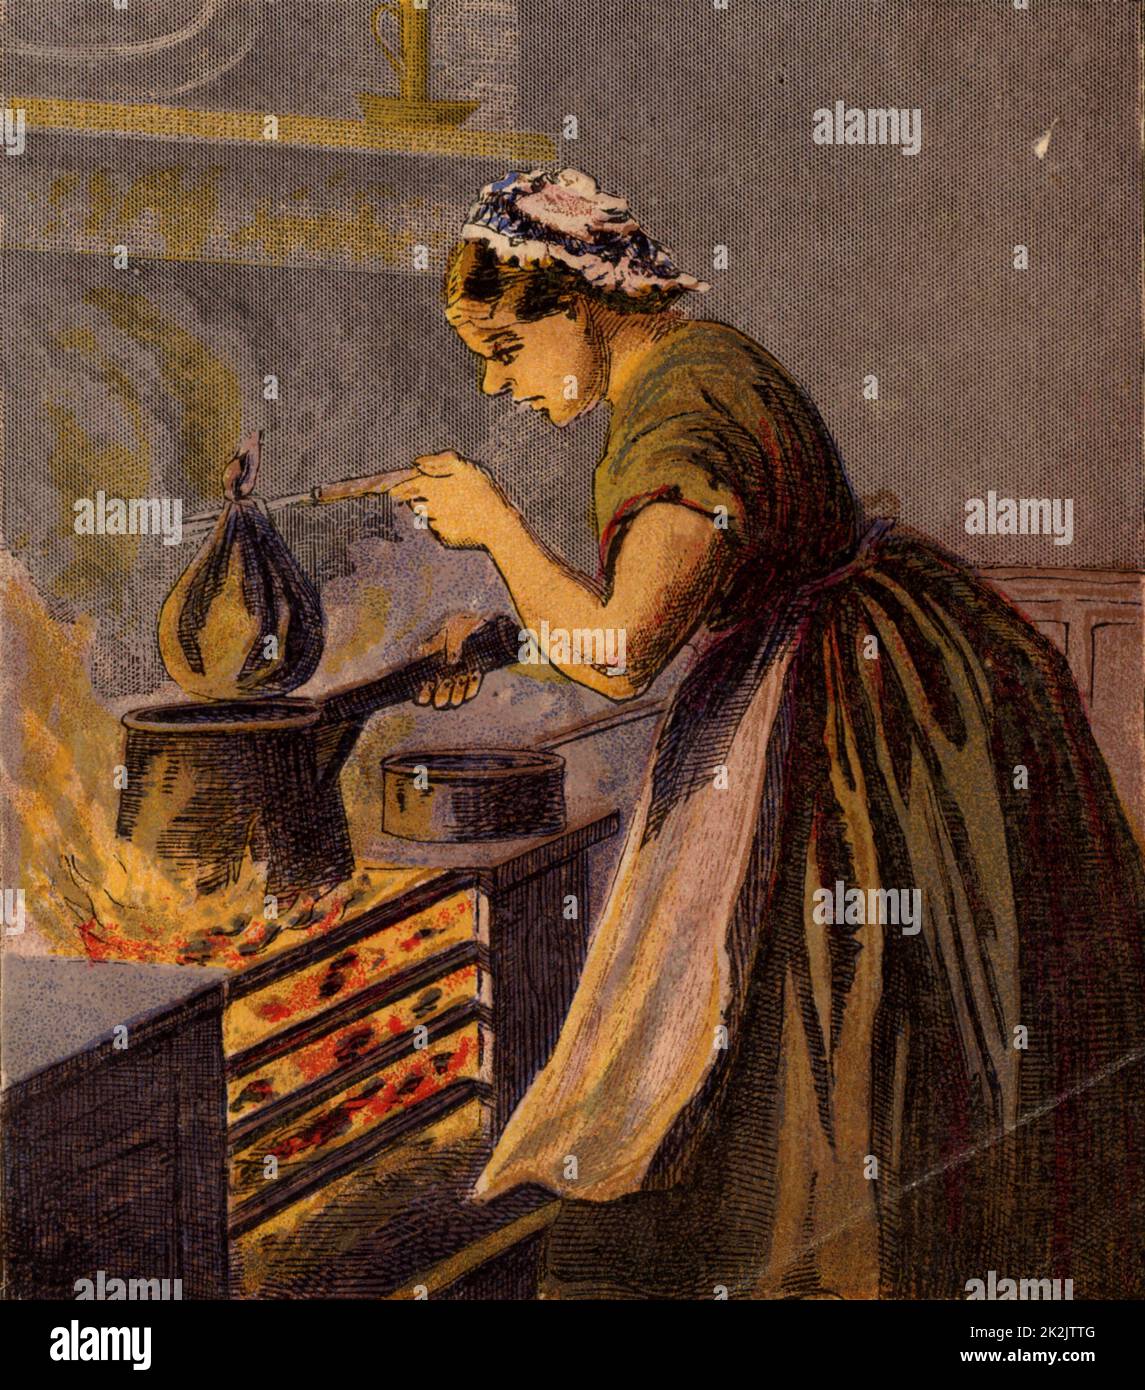 Kochen Sie einen suet Pudding in ein Tuch in einem Topf mit heißem Wasser zu Kochen auf eine typische kleine Küche reichen. Kronheim chromolithograph aus einem Kinderbuch veröffentlicht London c 1885. Stockfoto